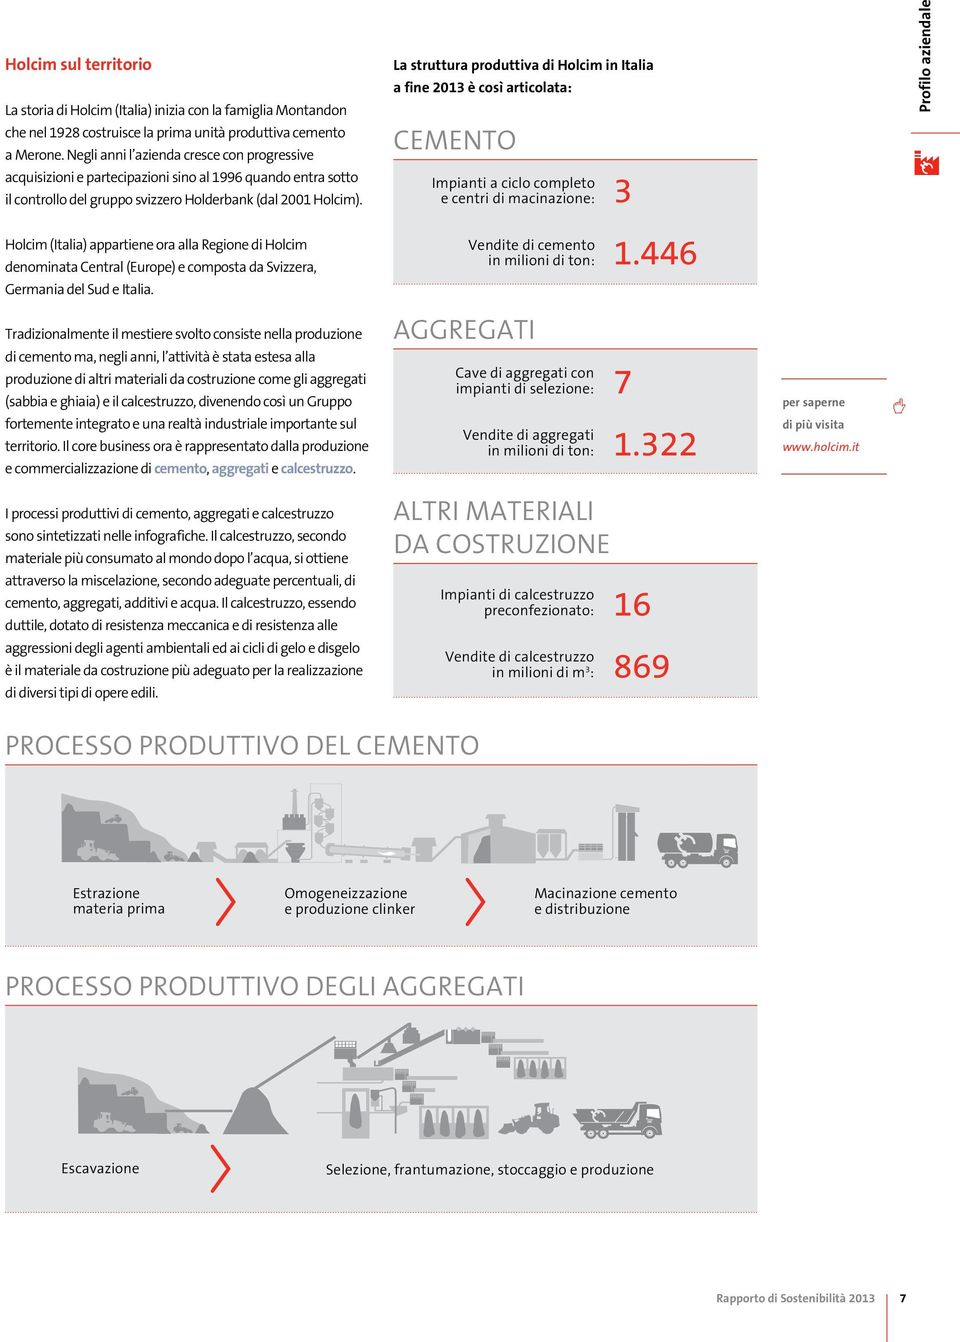 La struttura produttiva di Holcim in Italia a fine 2013 è così articolata: Cemento Impianti a ciclo completo e centri di macinazione: 3 Profilo aziendale Holcim (Italia) appartiene ora alla Regione